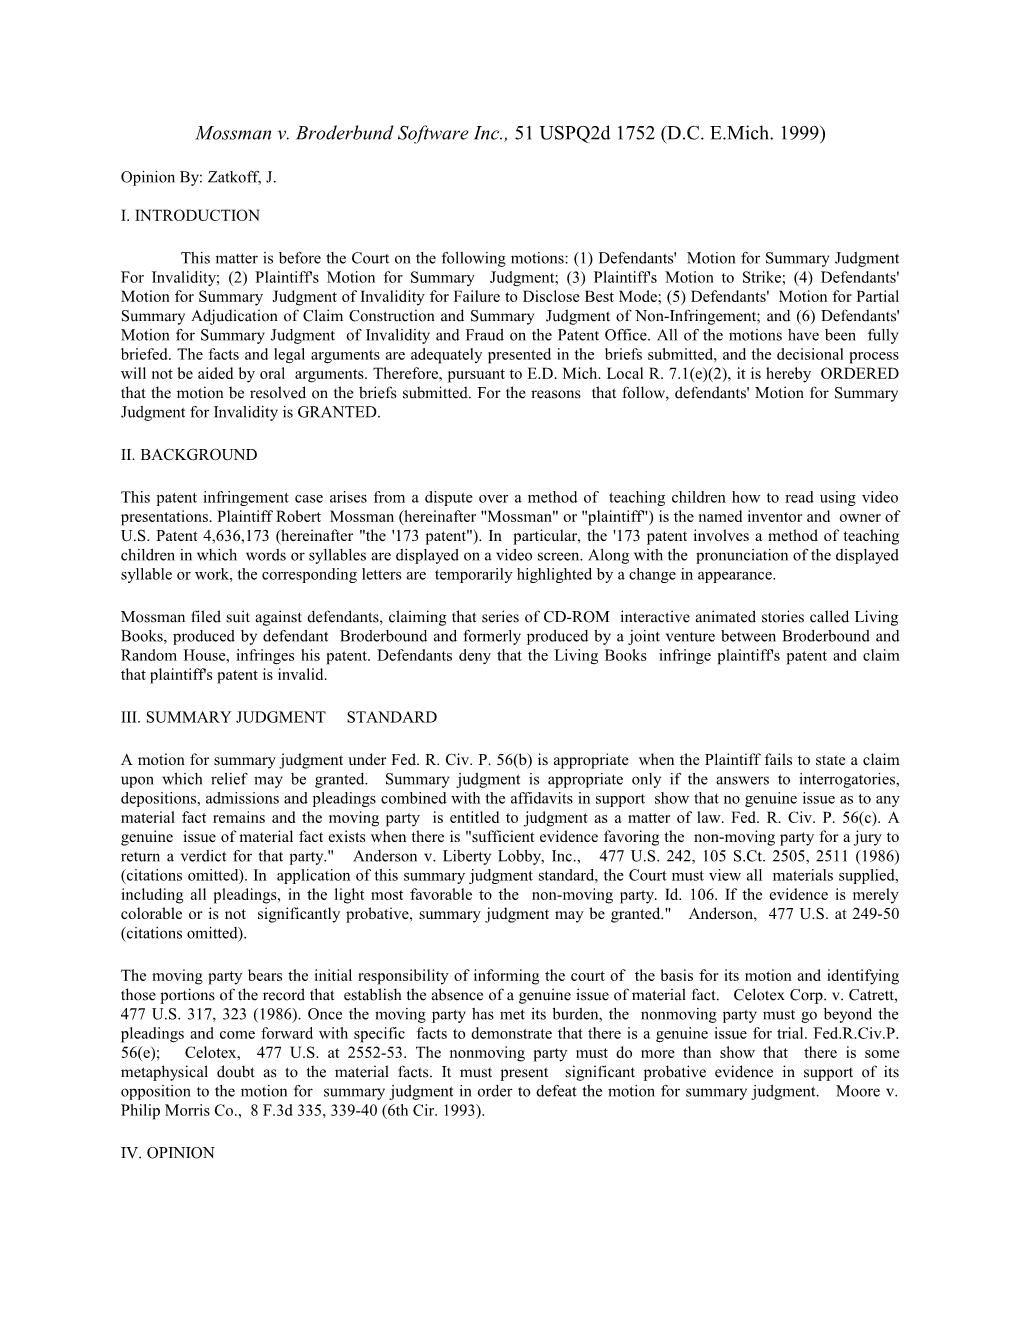 Mossman V. Broderbund Software Inc., 51 Uspq2d 1752 (D.C. E.Mich. 1999)